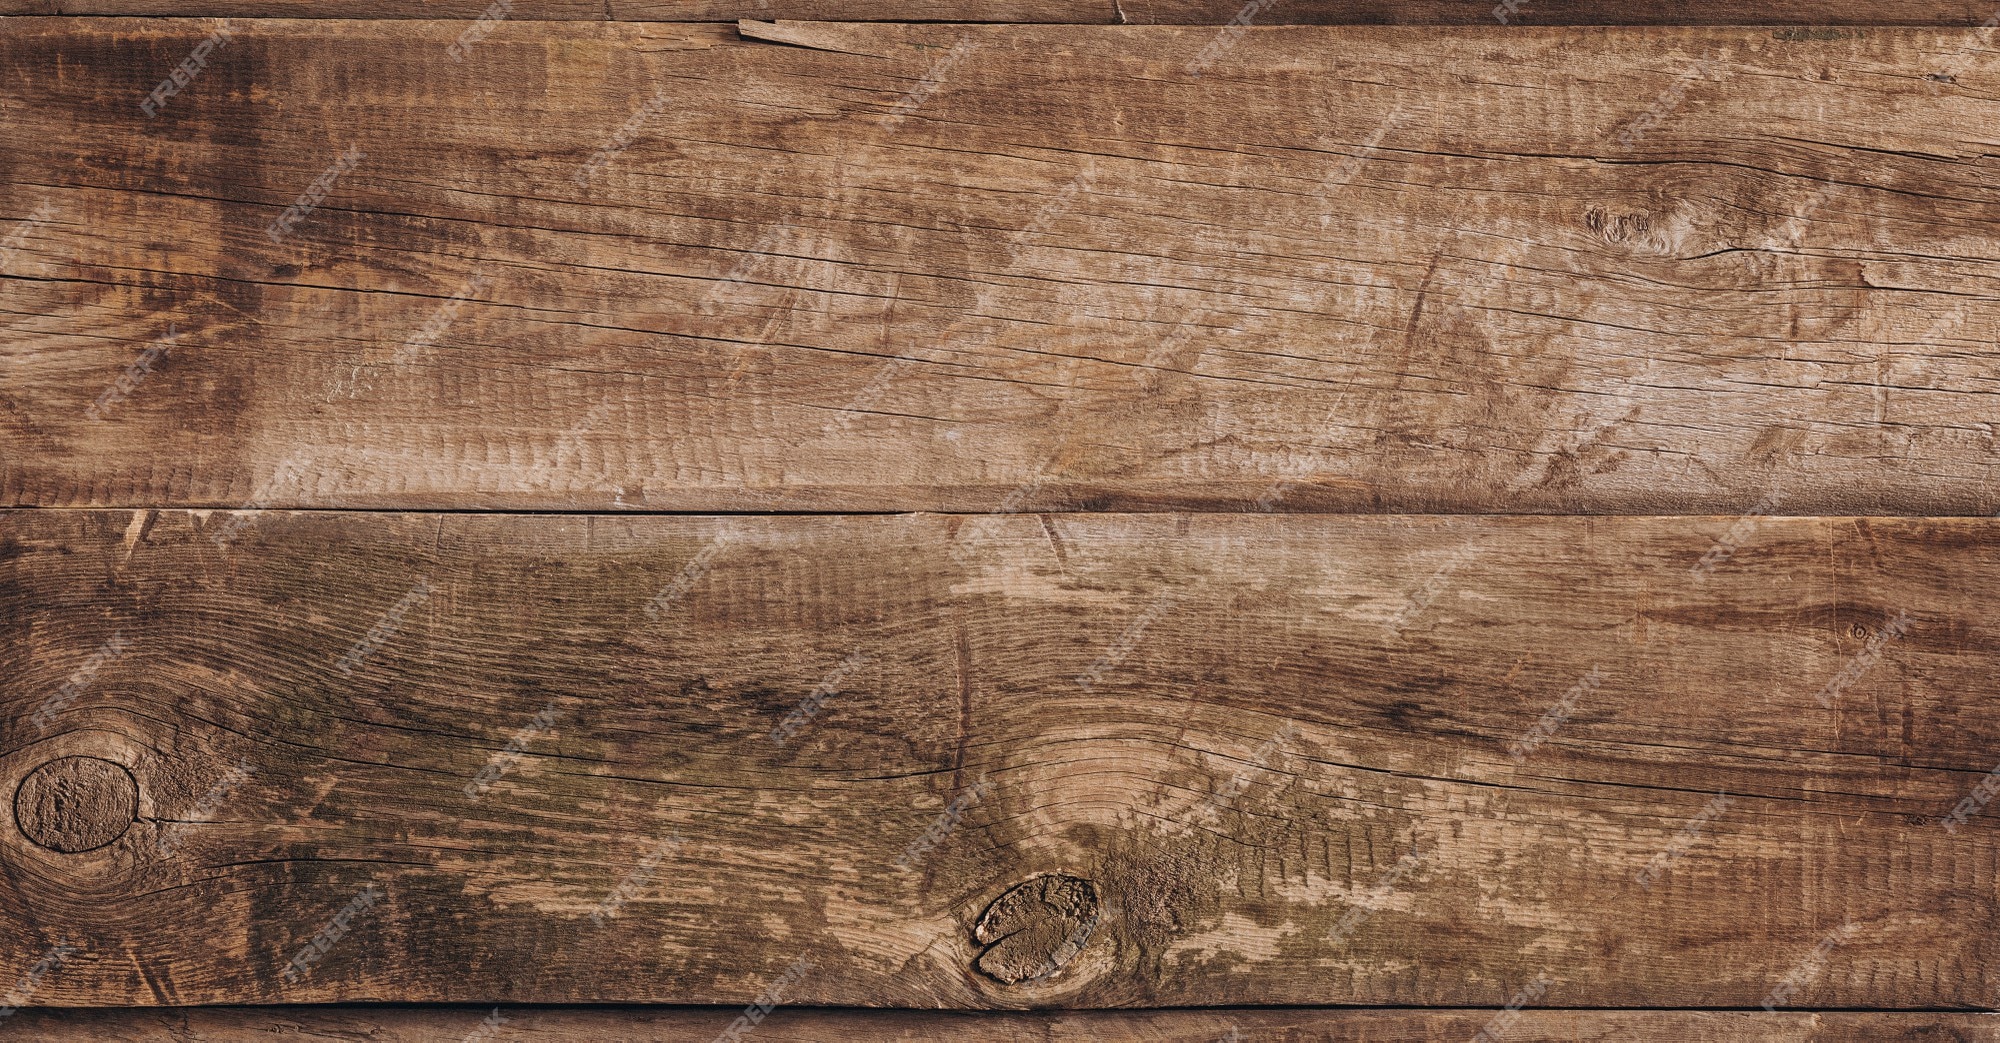 Nền gỗ vân xù: Với nền gỗ vân xù, bạn sẽ cảm nhận được sự chân thực và gần gũi của không gian mà nó mang lại. Sự khác biệt về kết cấu và khía cạnh tự nhiên của nền gỗ sẽ thổi một làn gió mới cho thiết kế của bạn.